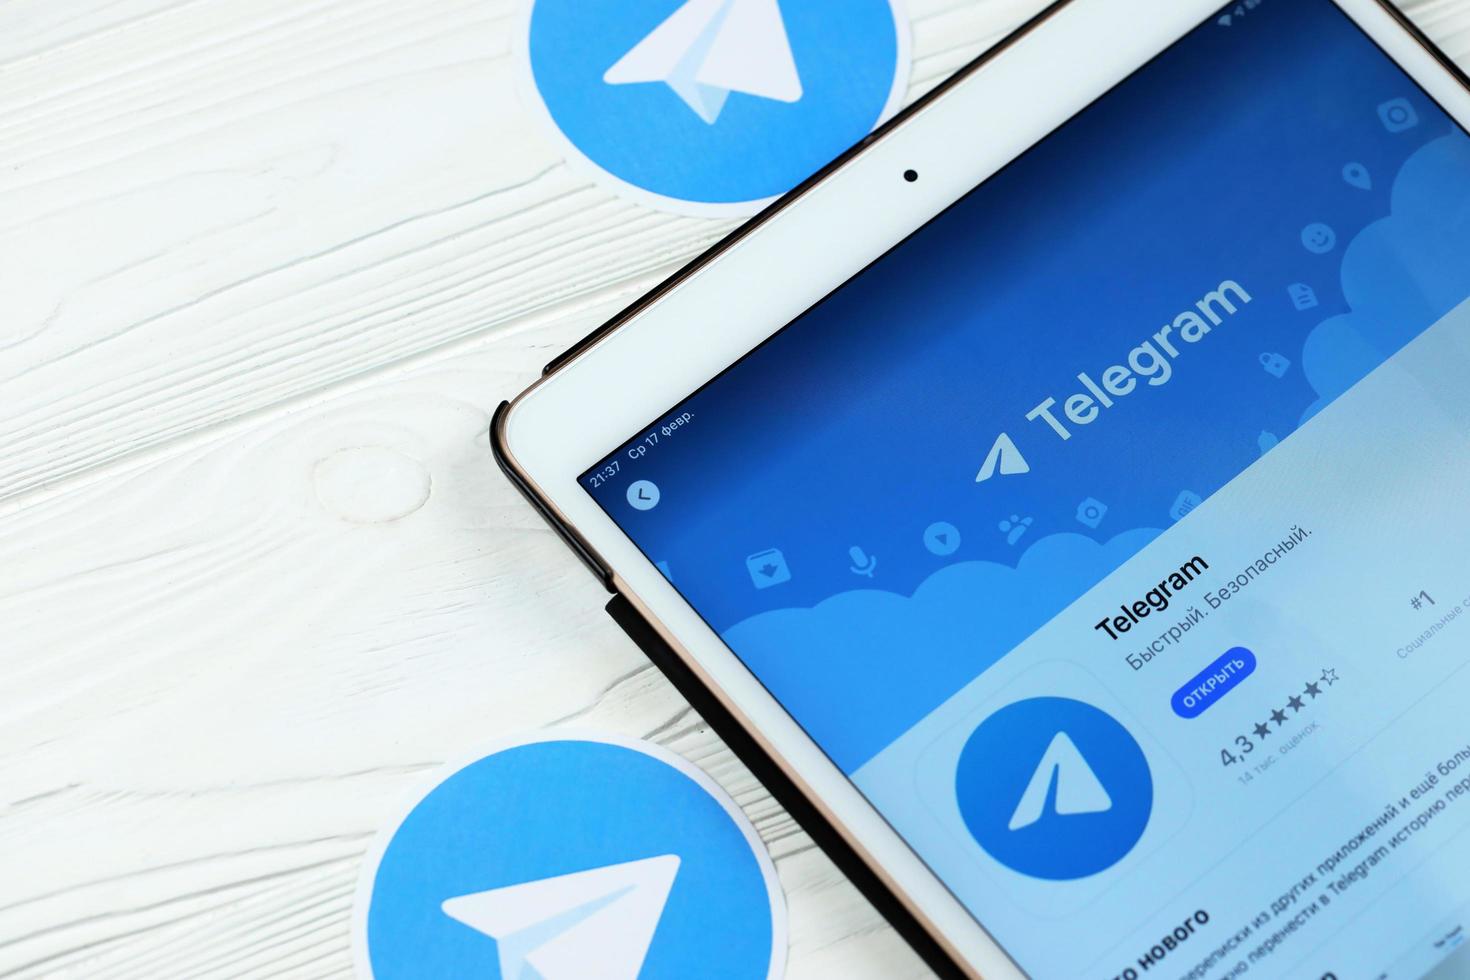 kharkov, ucrania - 14 de febrero de 2021 aplicación de telegramas en el mercado de la tienda de aplicaciones en la pantalla de ipad. Telegram es un software gratuito de mensajería instantánea basado en la nube multiplataforma. foto